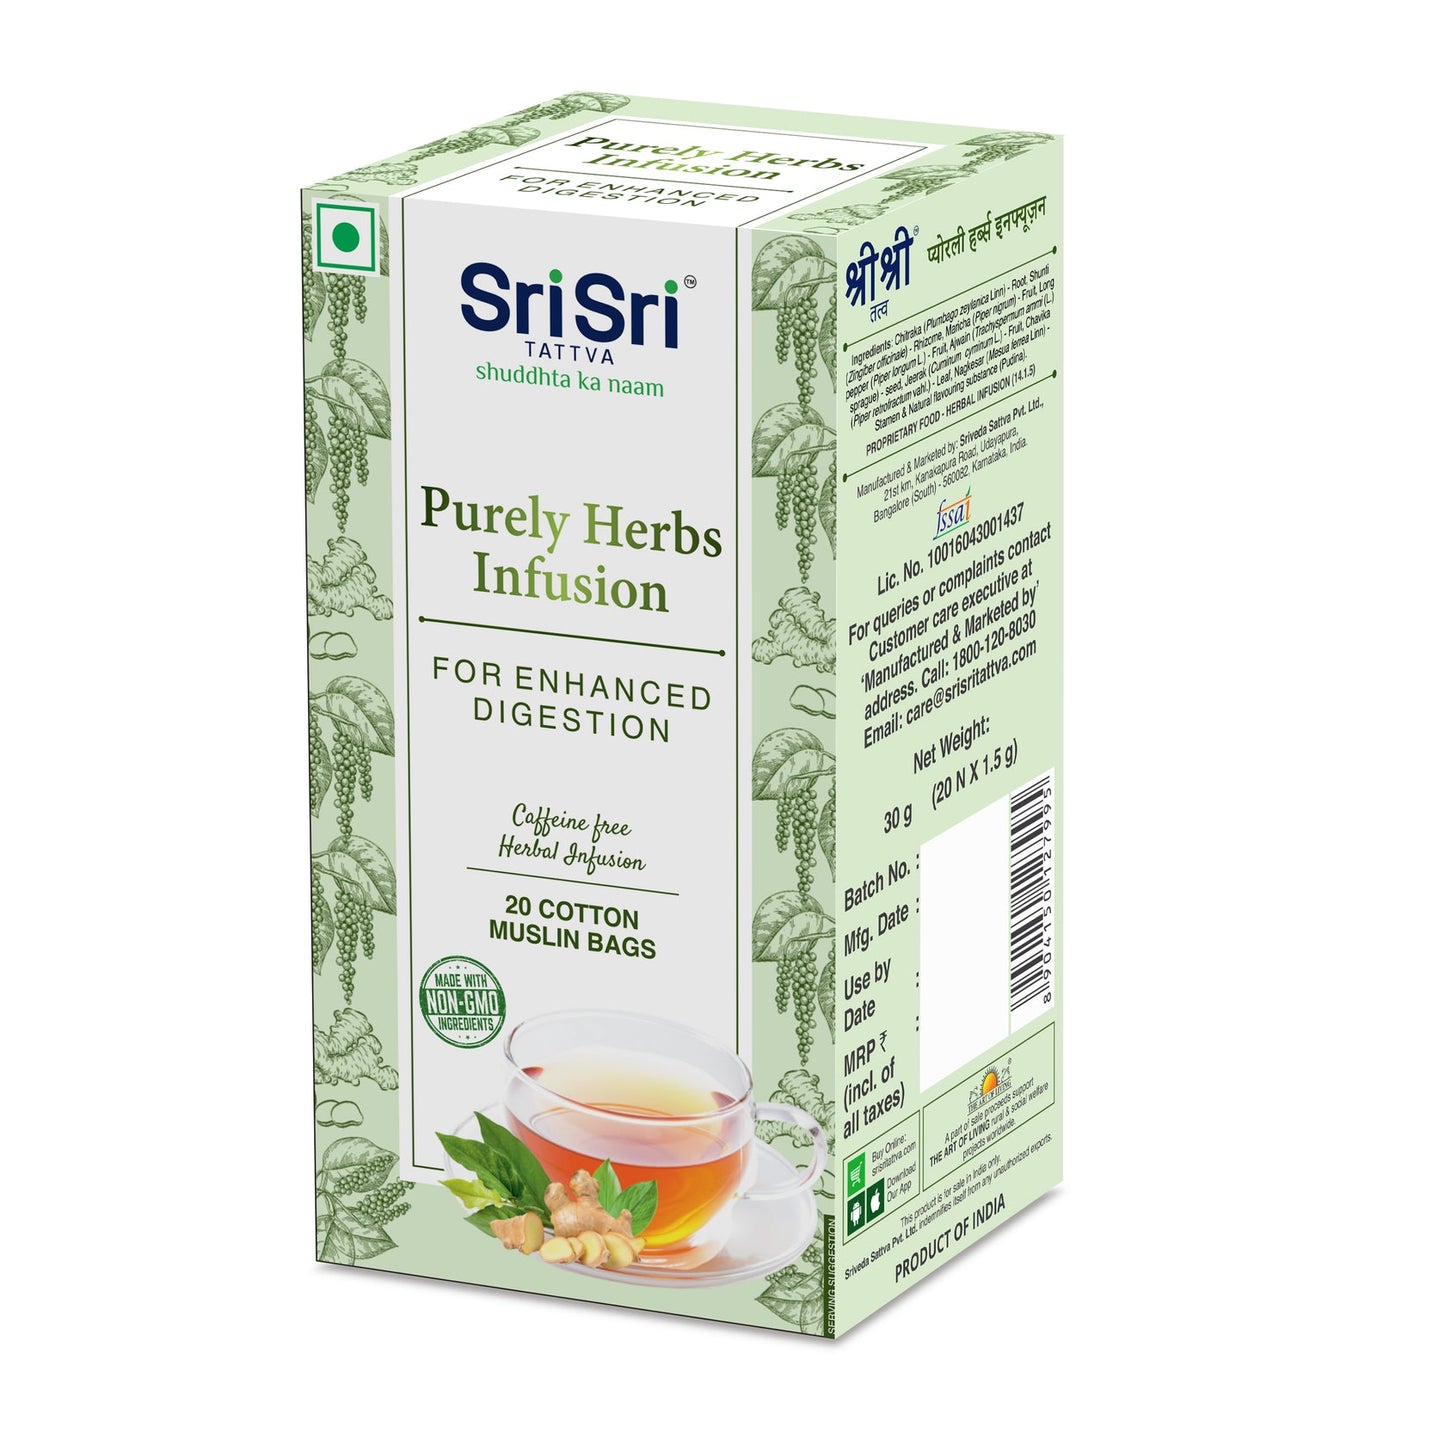 Purely Herbs Infusion | Sri Sri Tattva | 20 Bags